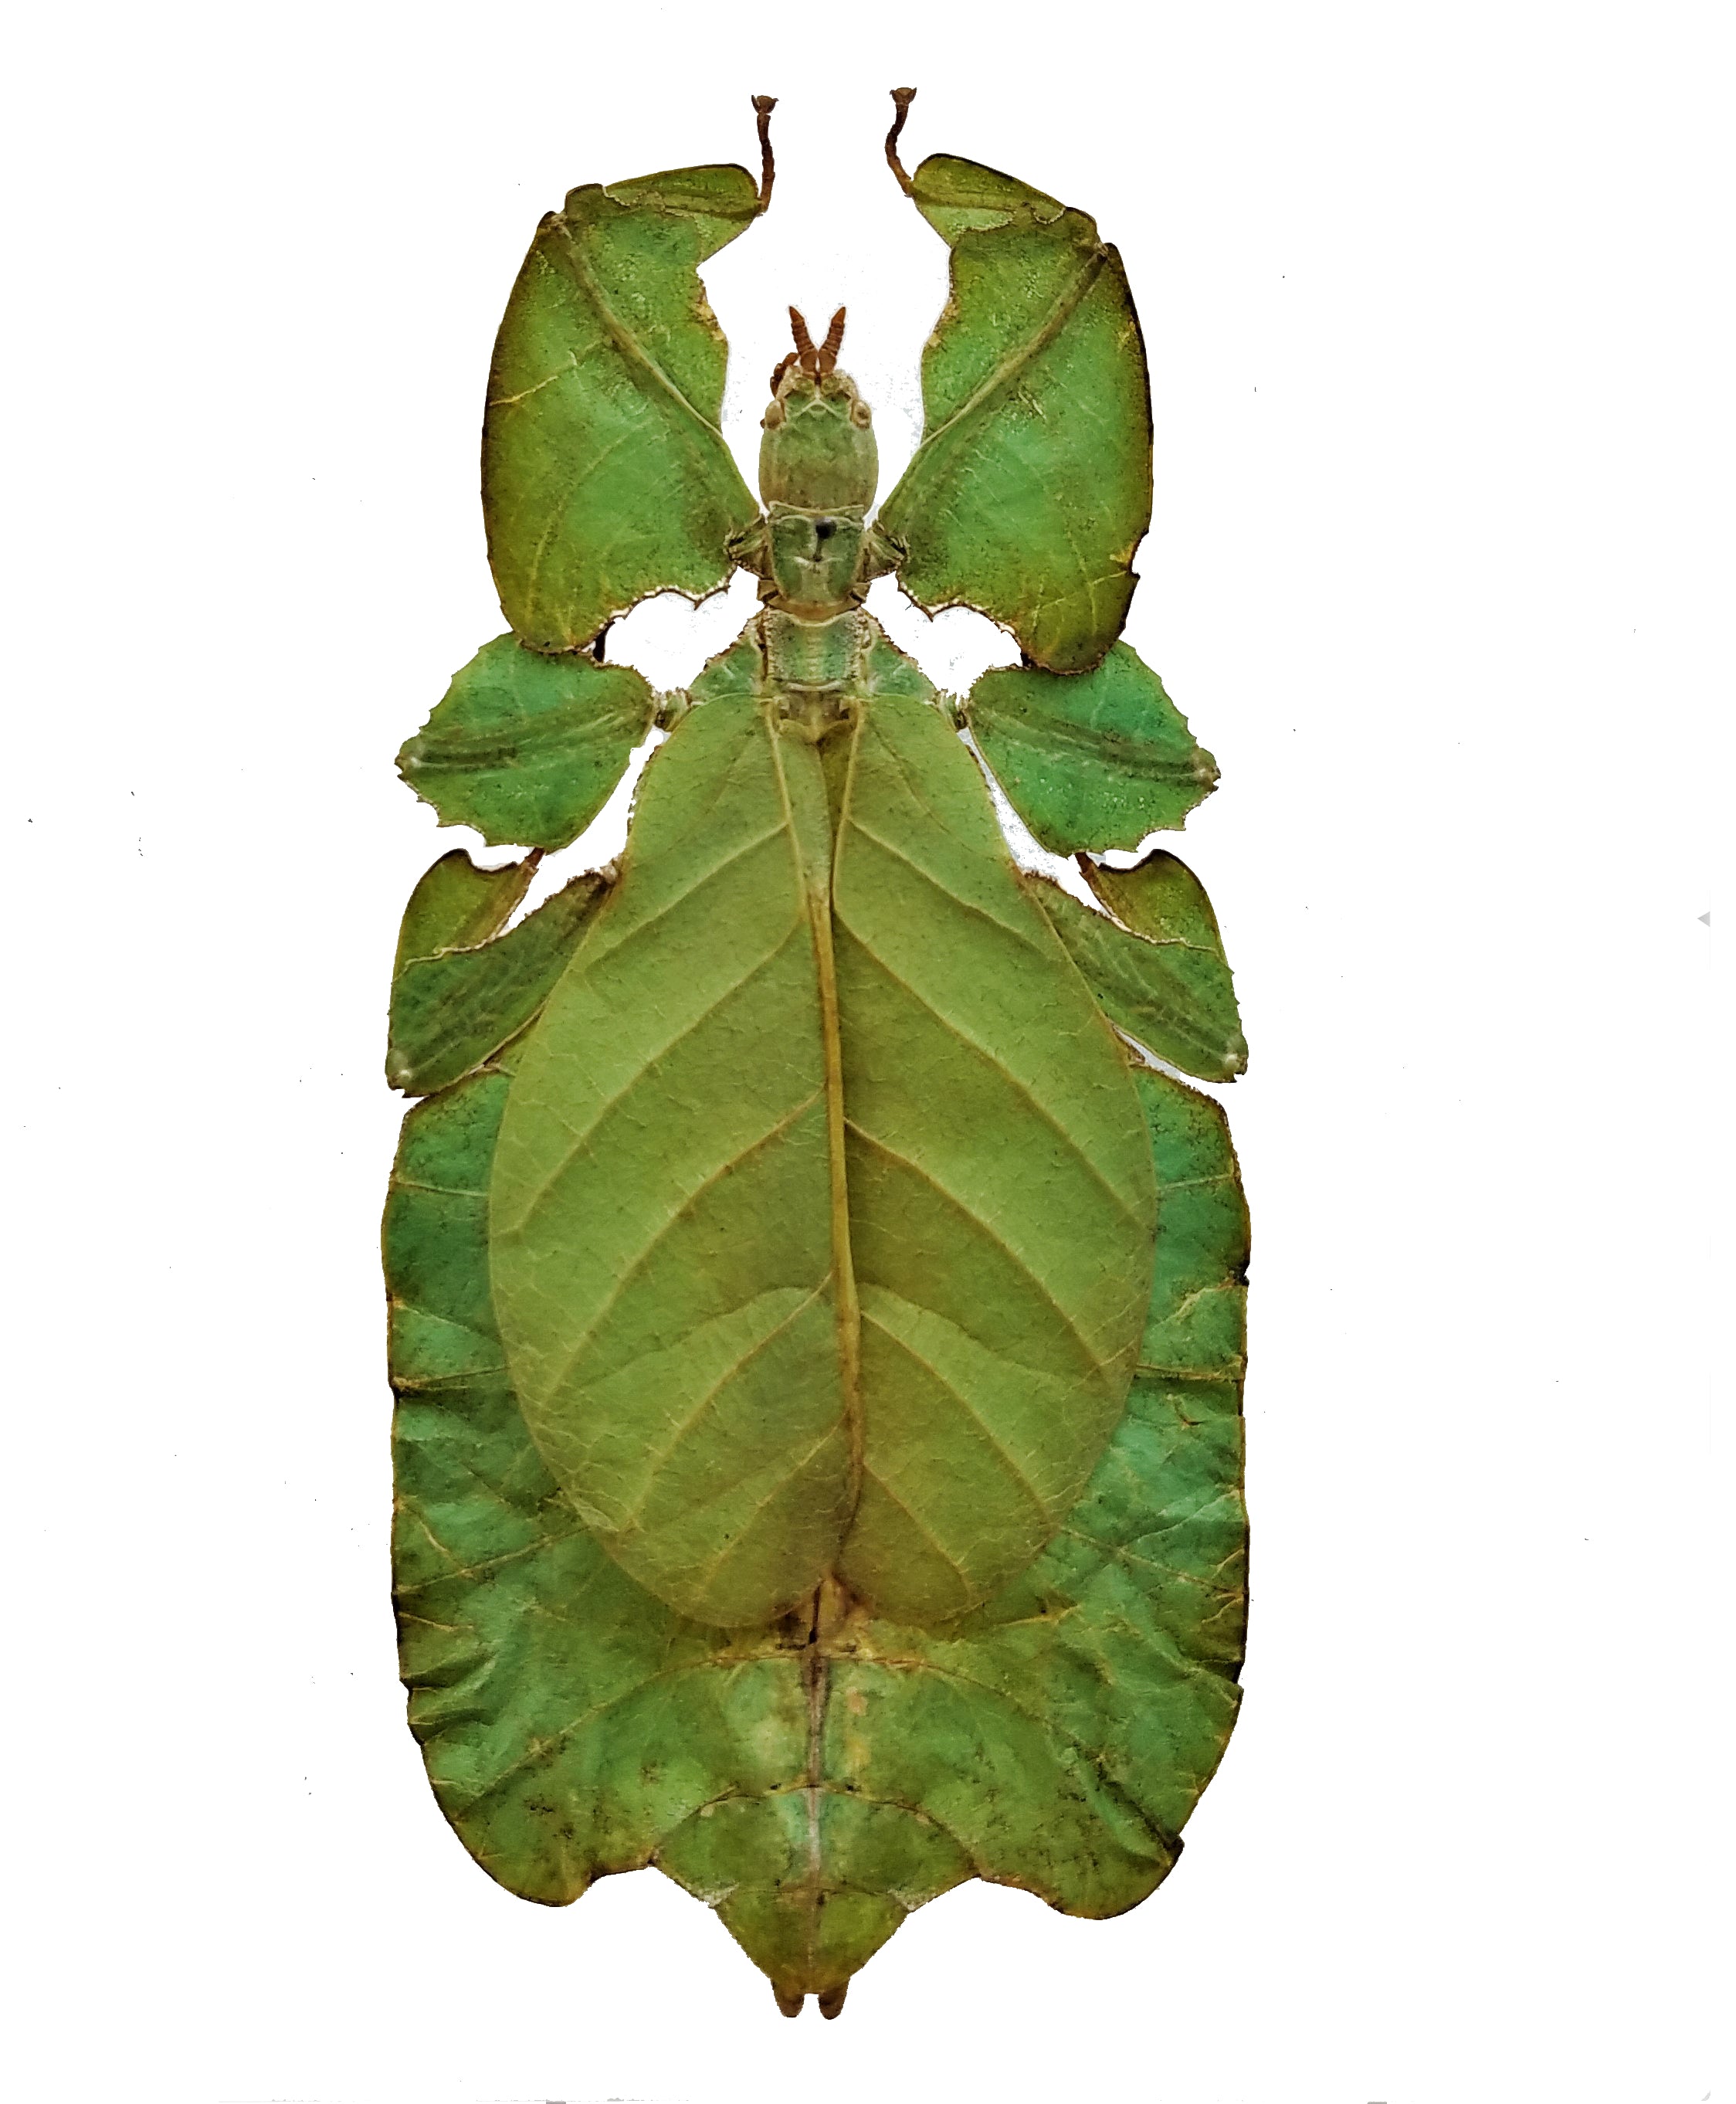 Phyllium pulchrifolium, leaf insect - Little Caterpillar Art Little Caterpillar Art  